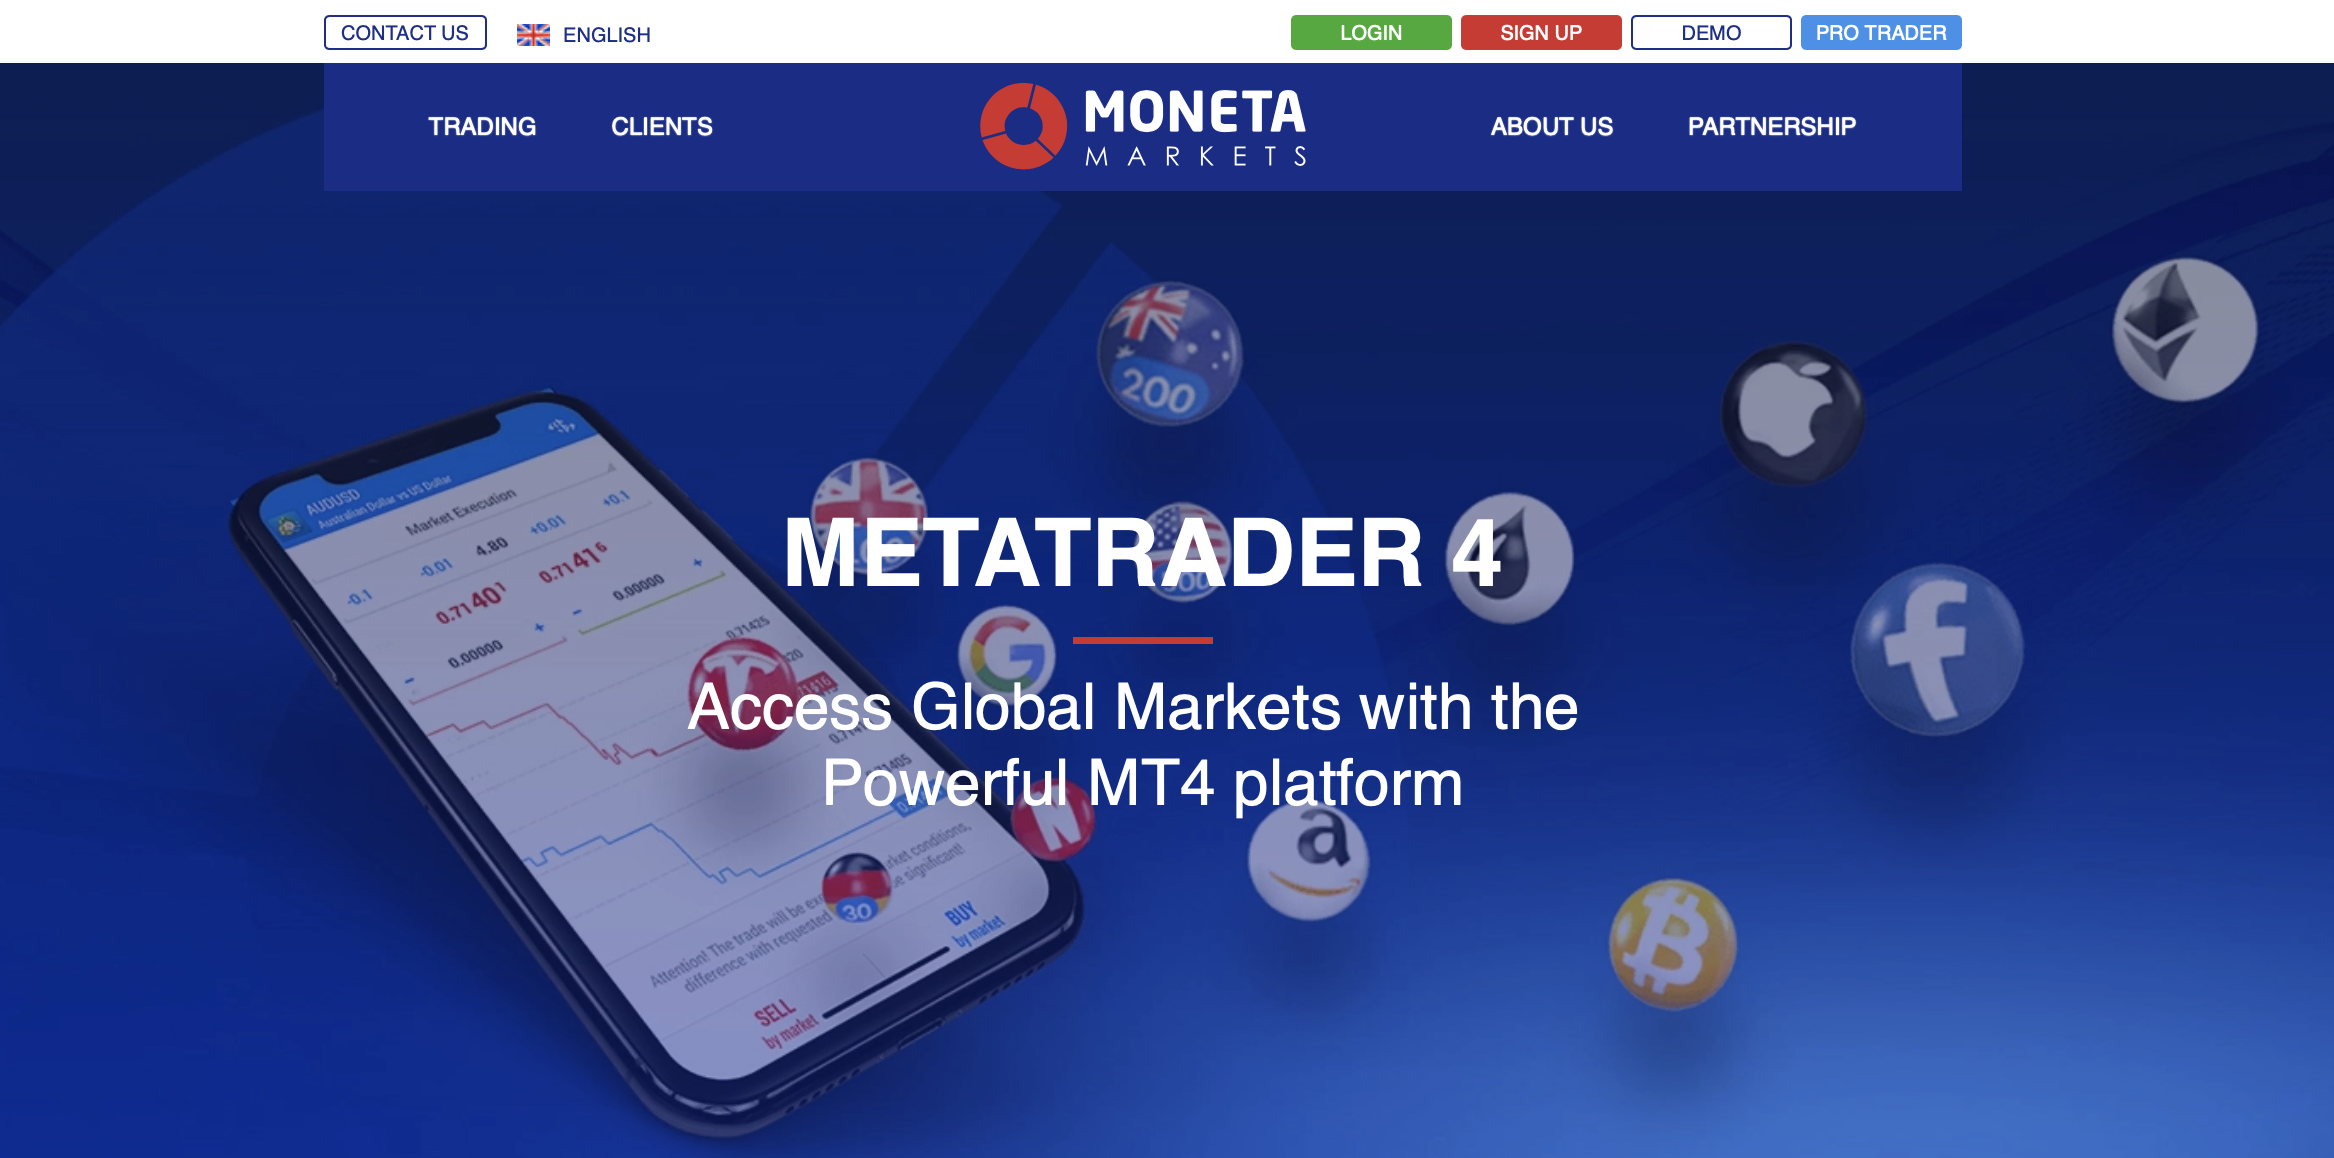 Oficiální vstupní stránka MetaTrader 4 Moneta Markets